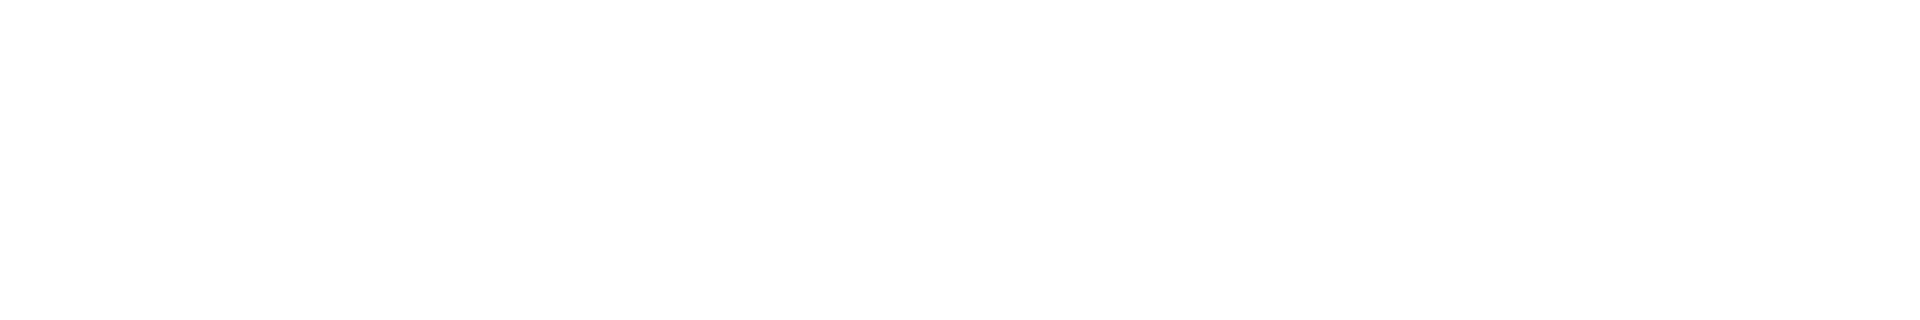 深圳宇行科技-stolutions_banner2